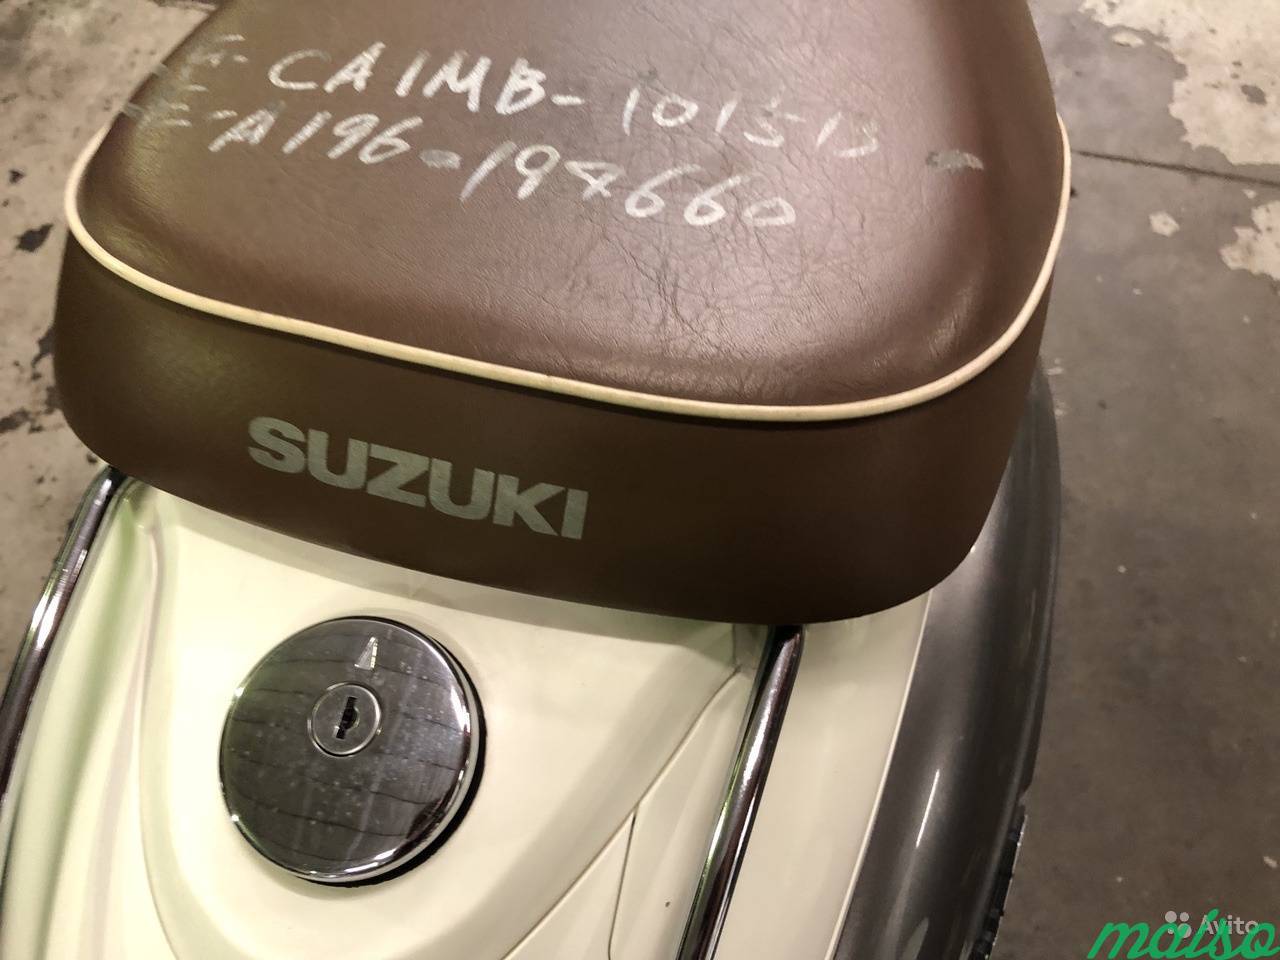 Ретро скутер Suzuki Verde Ca1mb 2t, 49cc в Санкт-Петербурге. Фото 2